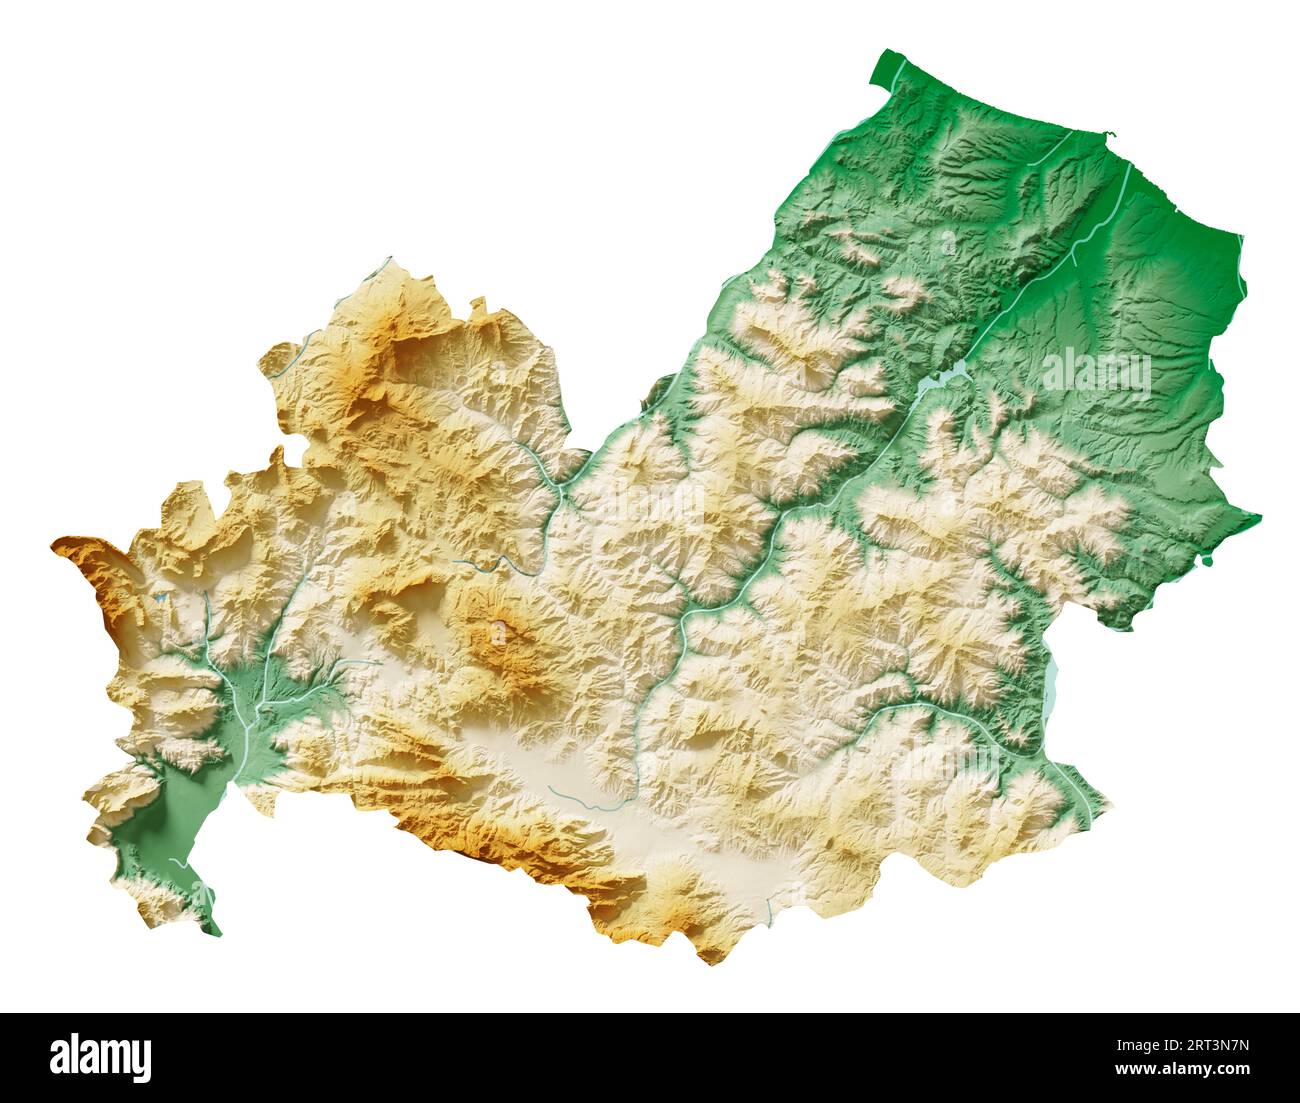 Molise. Una regione d'Italia. Rendering 3D dettagliato di una mappa di rilievo ombreggiata, fiumi, laghi. Colorato in base all'elevazione. Sfondo bianco puro. Foto Stock